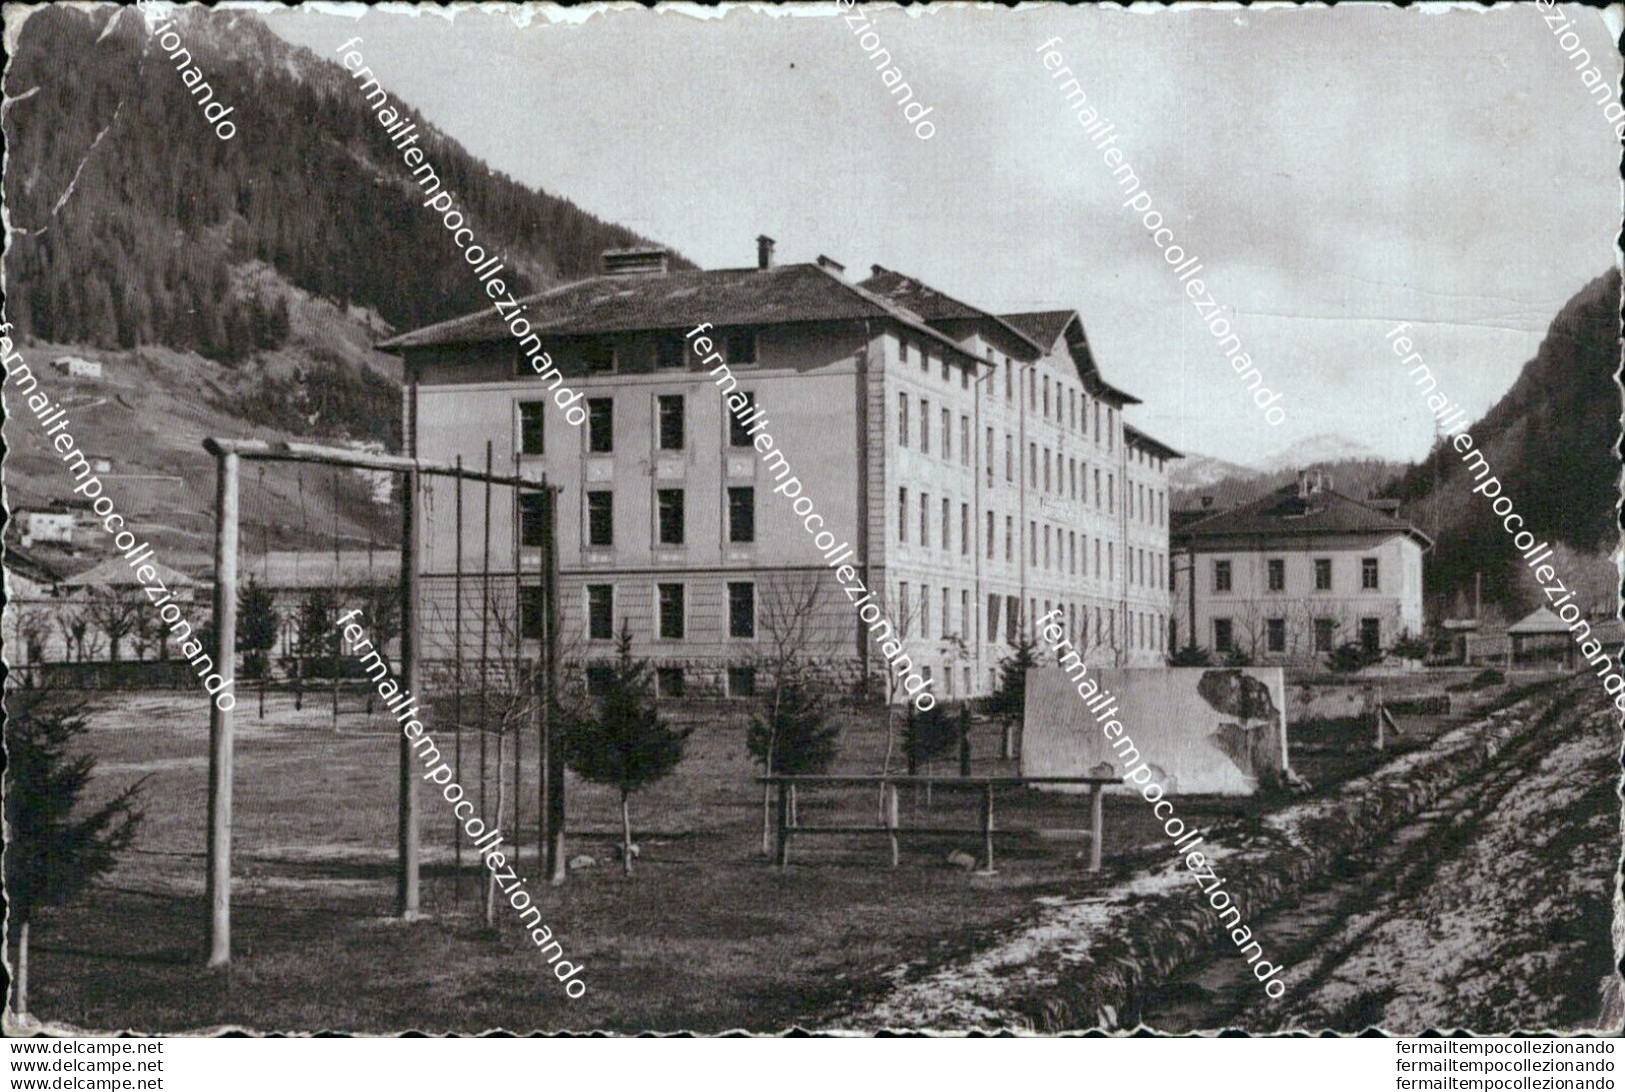 Bm183 Cartolina Preadazzo Caserma Della Scuola Alpinar.guardia Di Finanza Trento - Trento